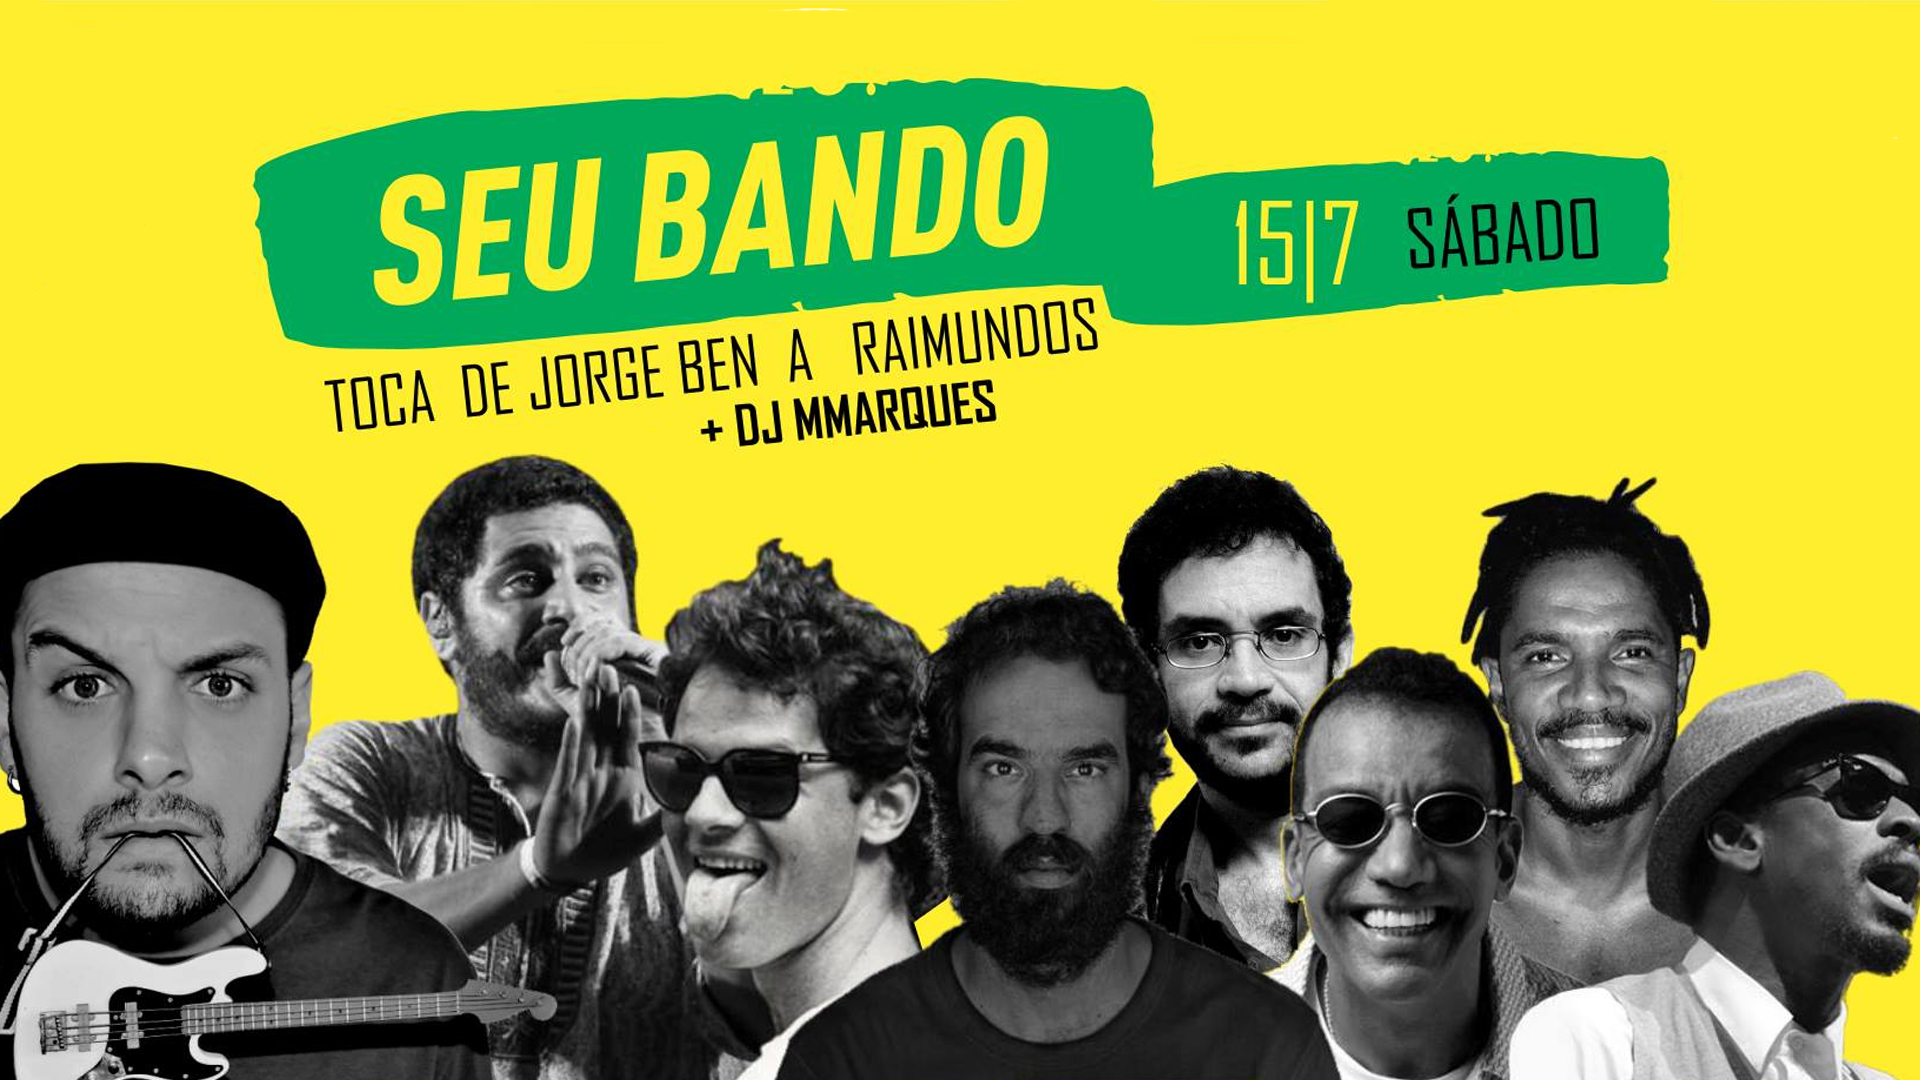 sábado - Baile do Bando: Seu Bando + DJ